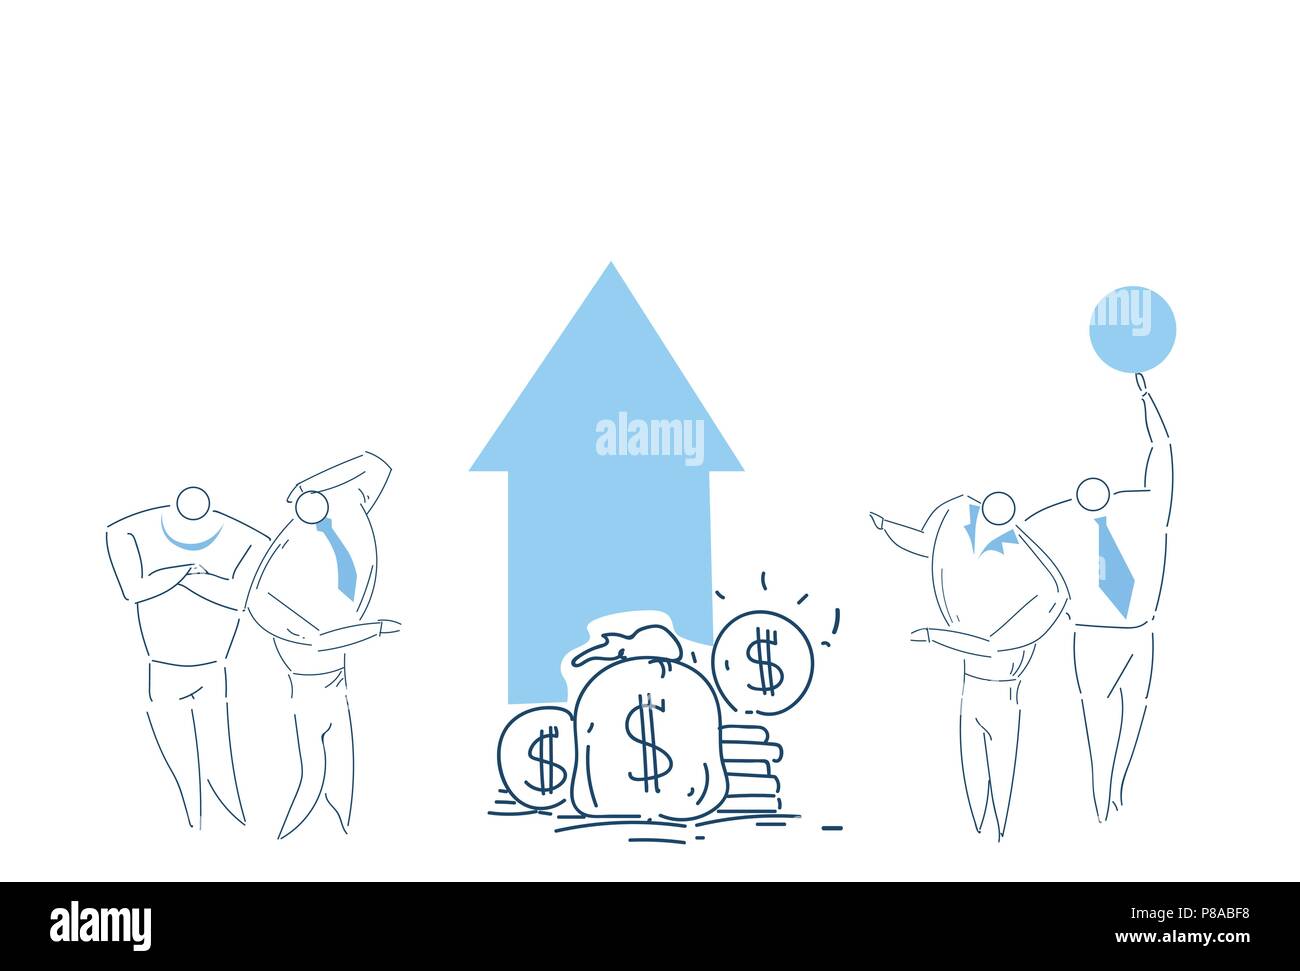 Menschen Gruppe brainstorming Wachstum Reichtum Geld zusammen arbeiten Strategie Prozess Konzept Skizze doodle Stock Vektor